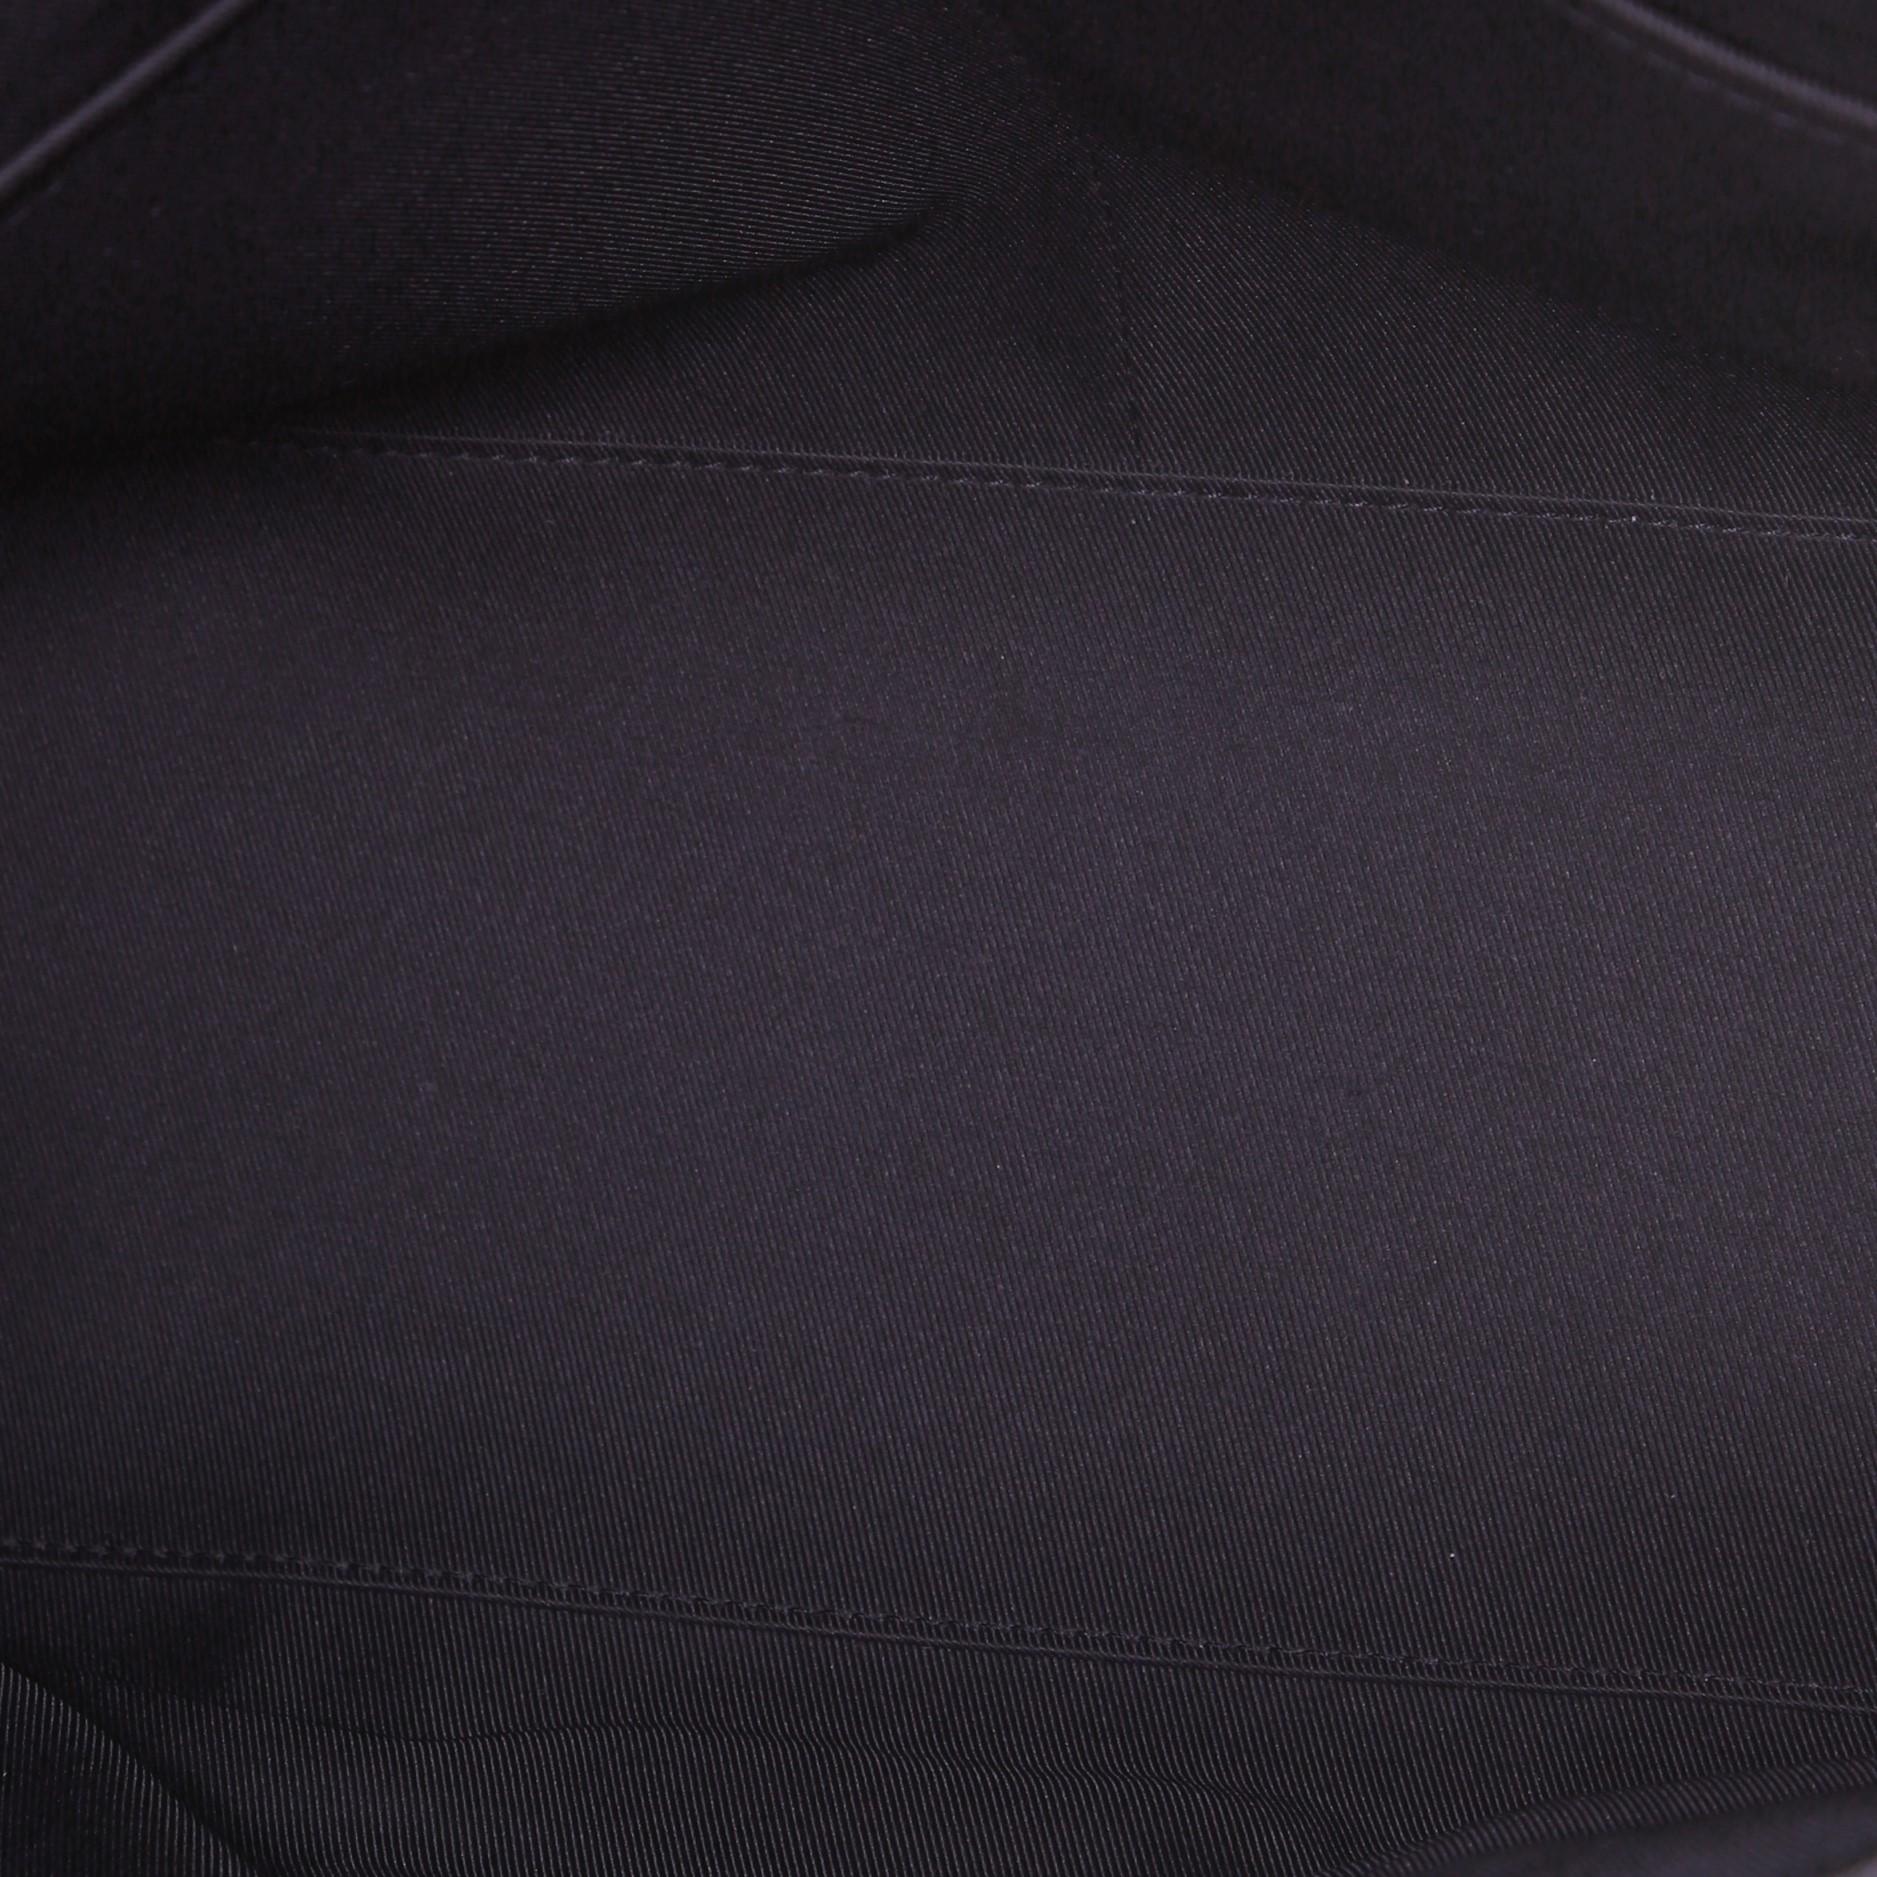 Louis Vuitton Aerogram Tote Leather 2